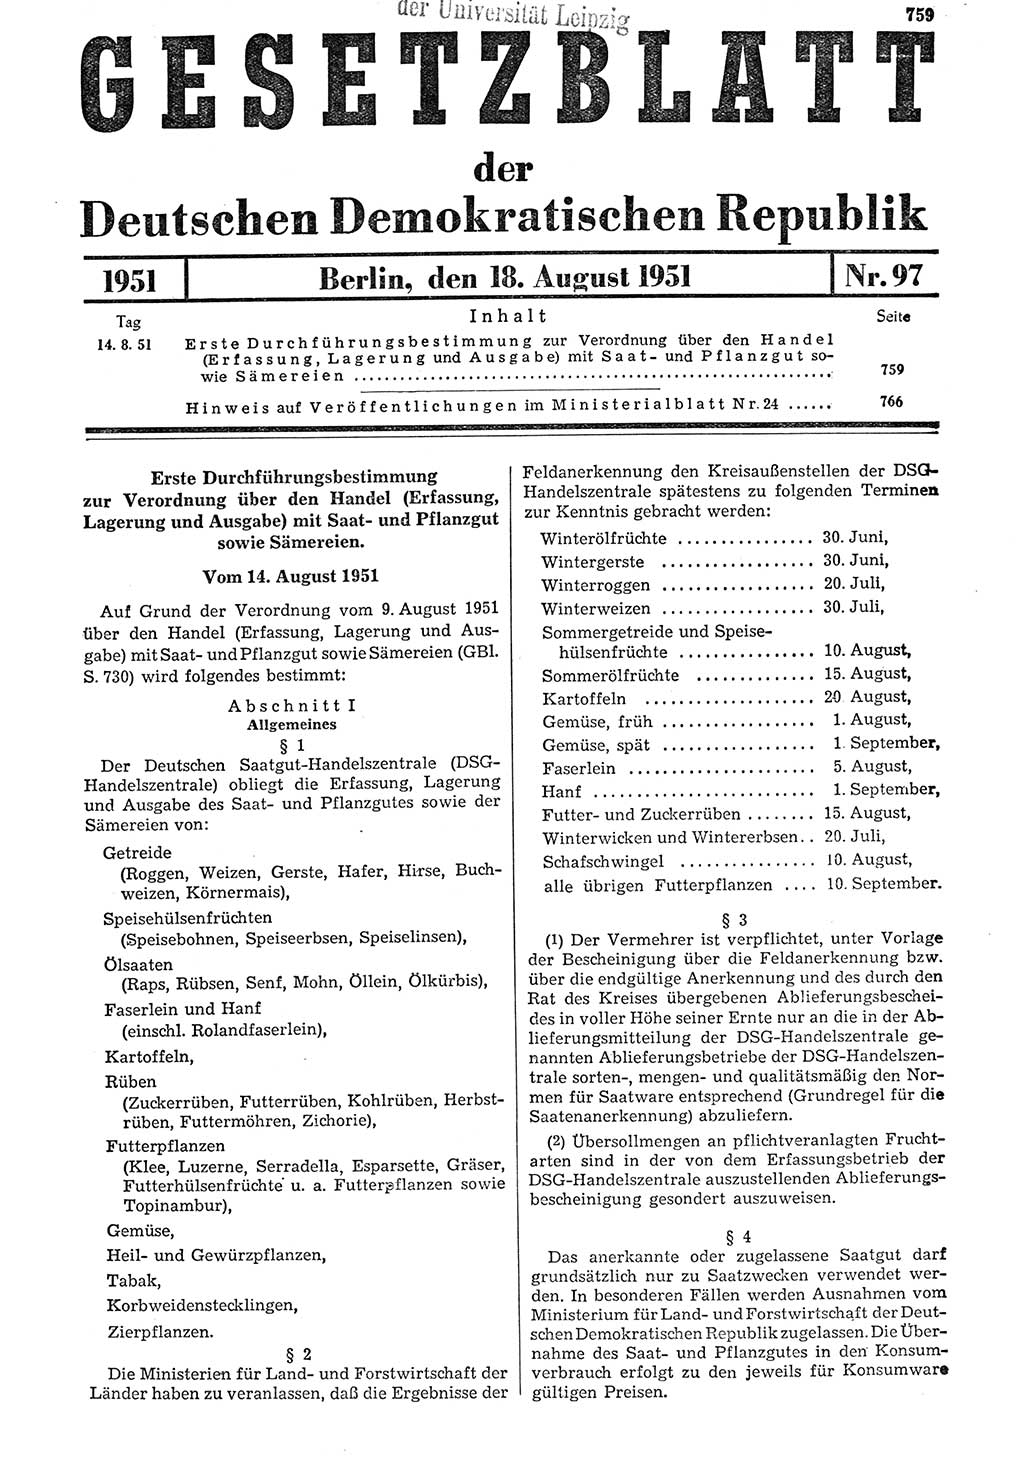 Gesetzblatt (GBl.) der Deutschen Demokratischen Republik (DDR) 1951, Seite 759 (GBl. DDR 1951, S. 759)